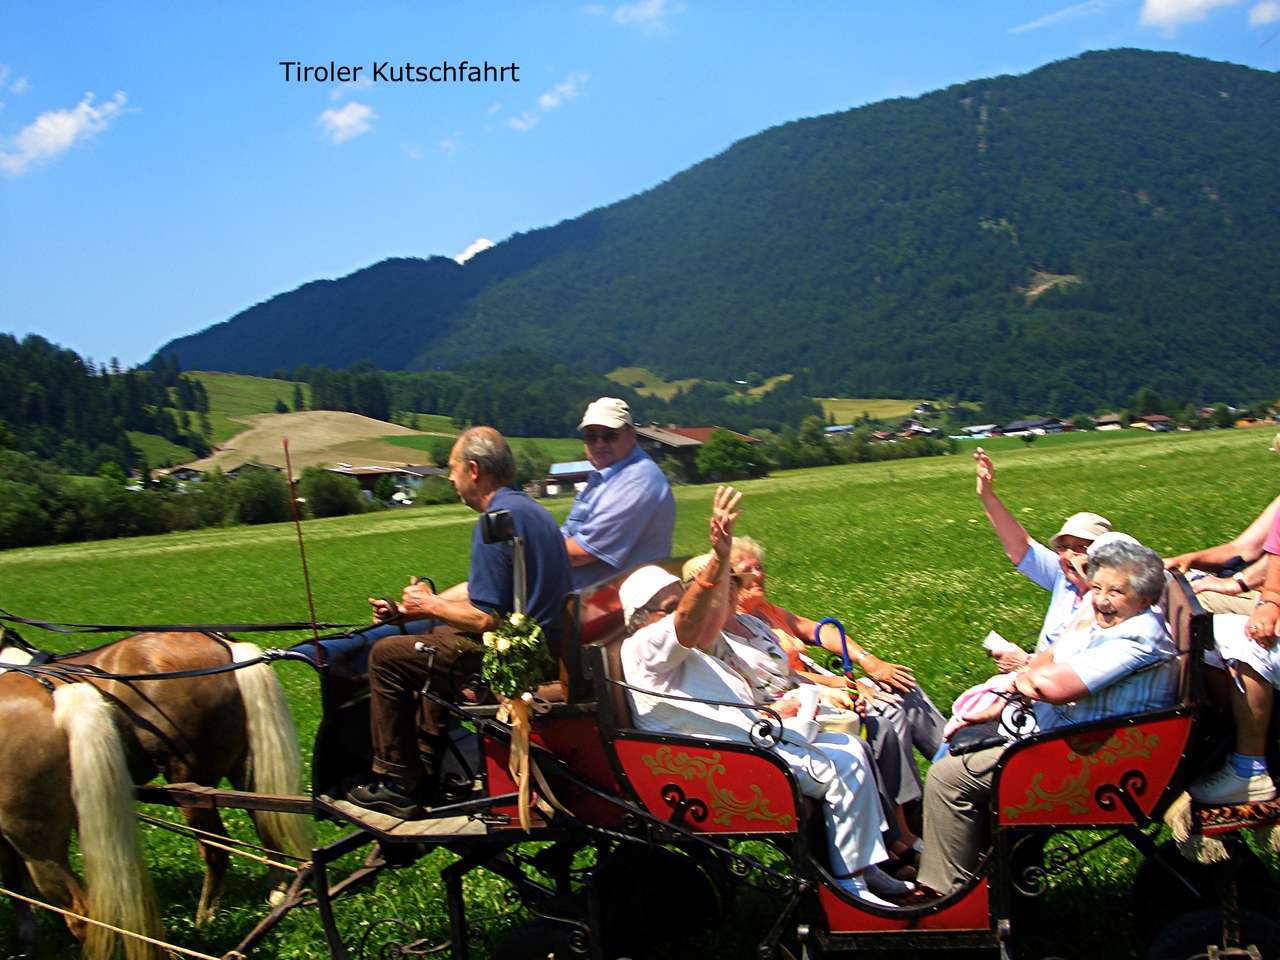 Kutschfahrt in Tirol Online-Puzzle